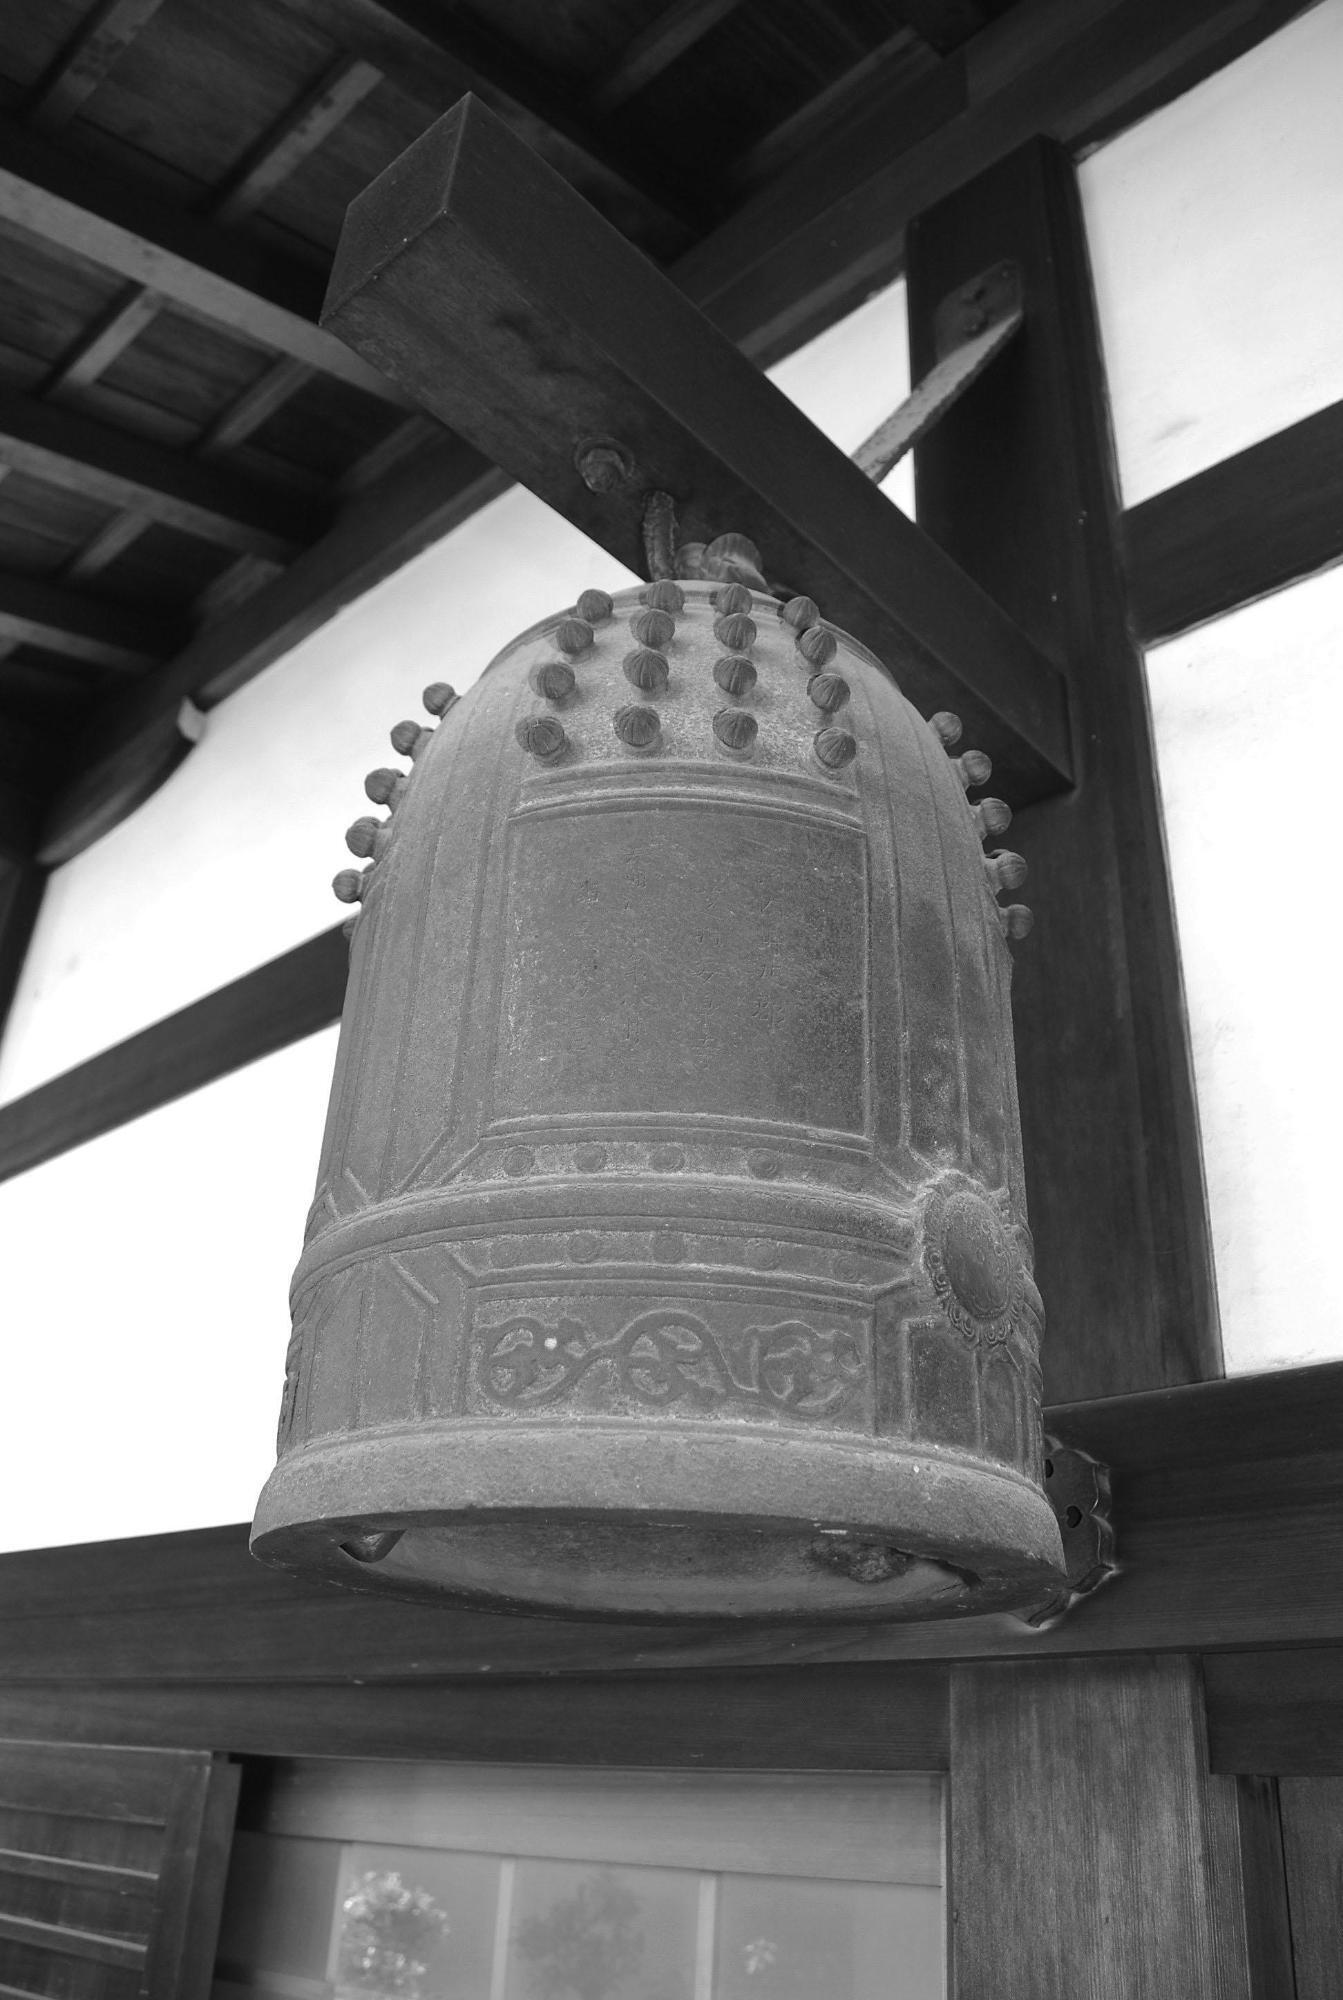 「芝村安楽寺」銘の喚鐘の写真